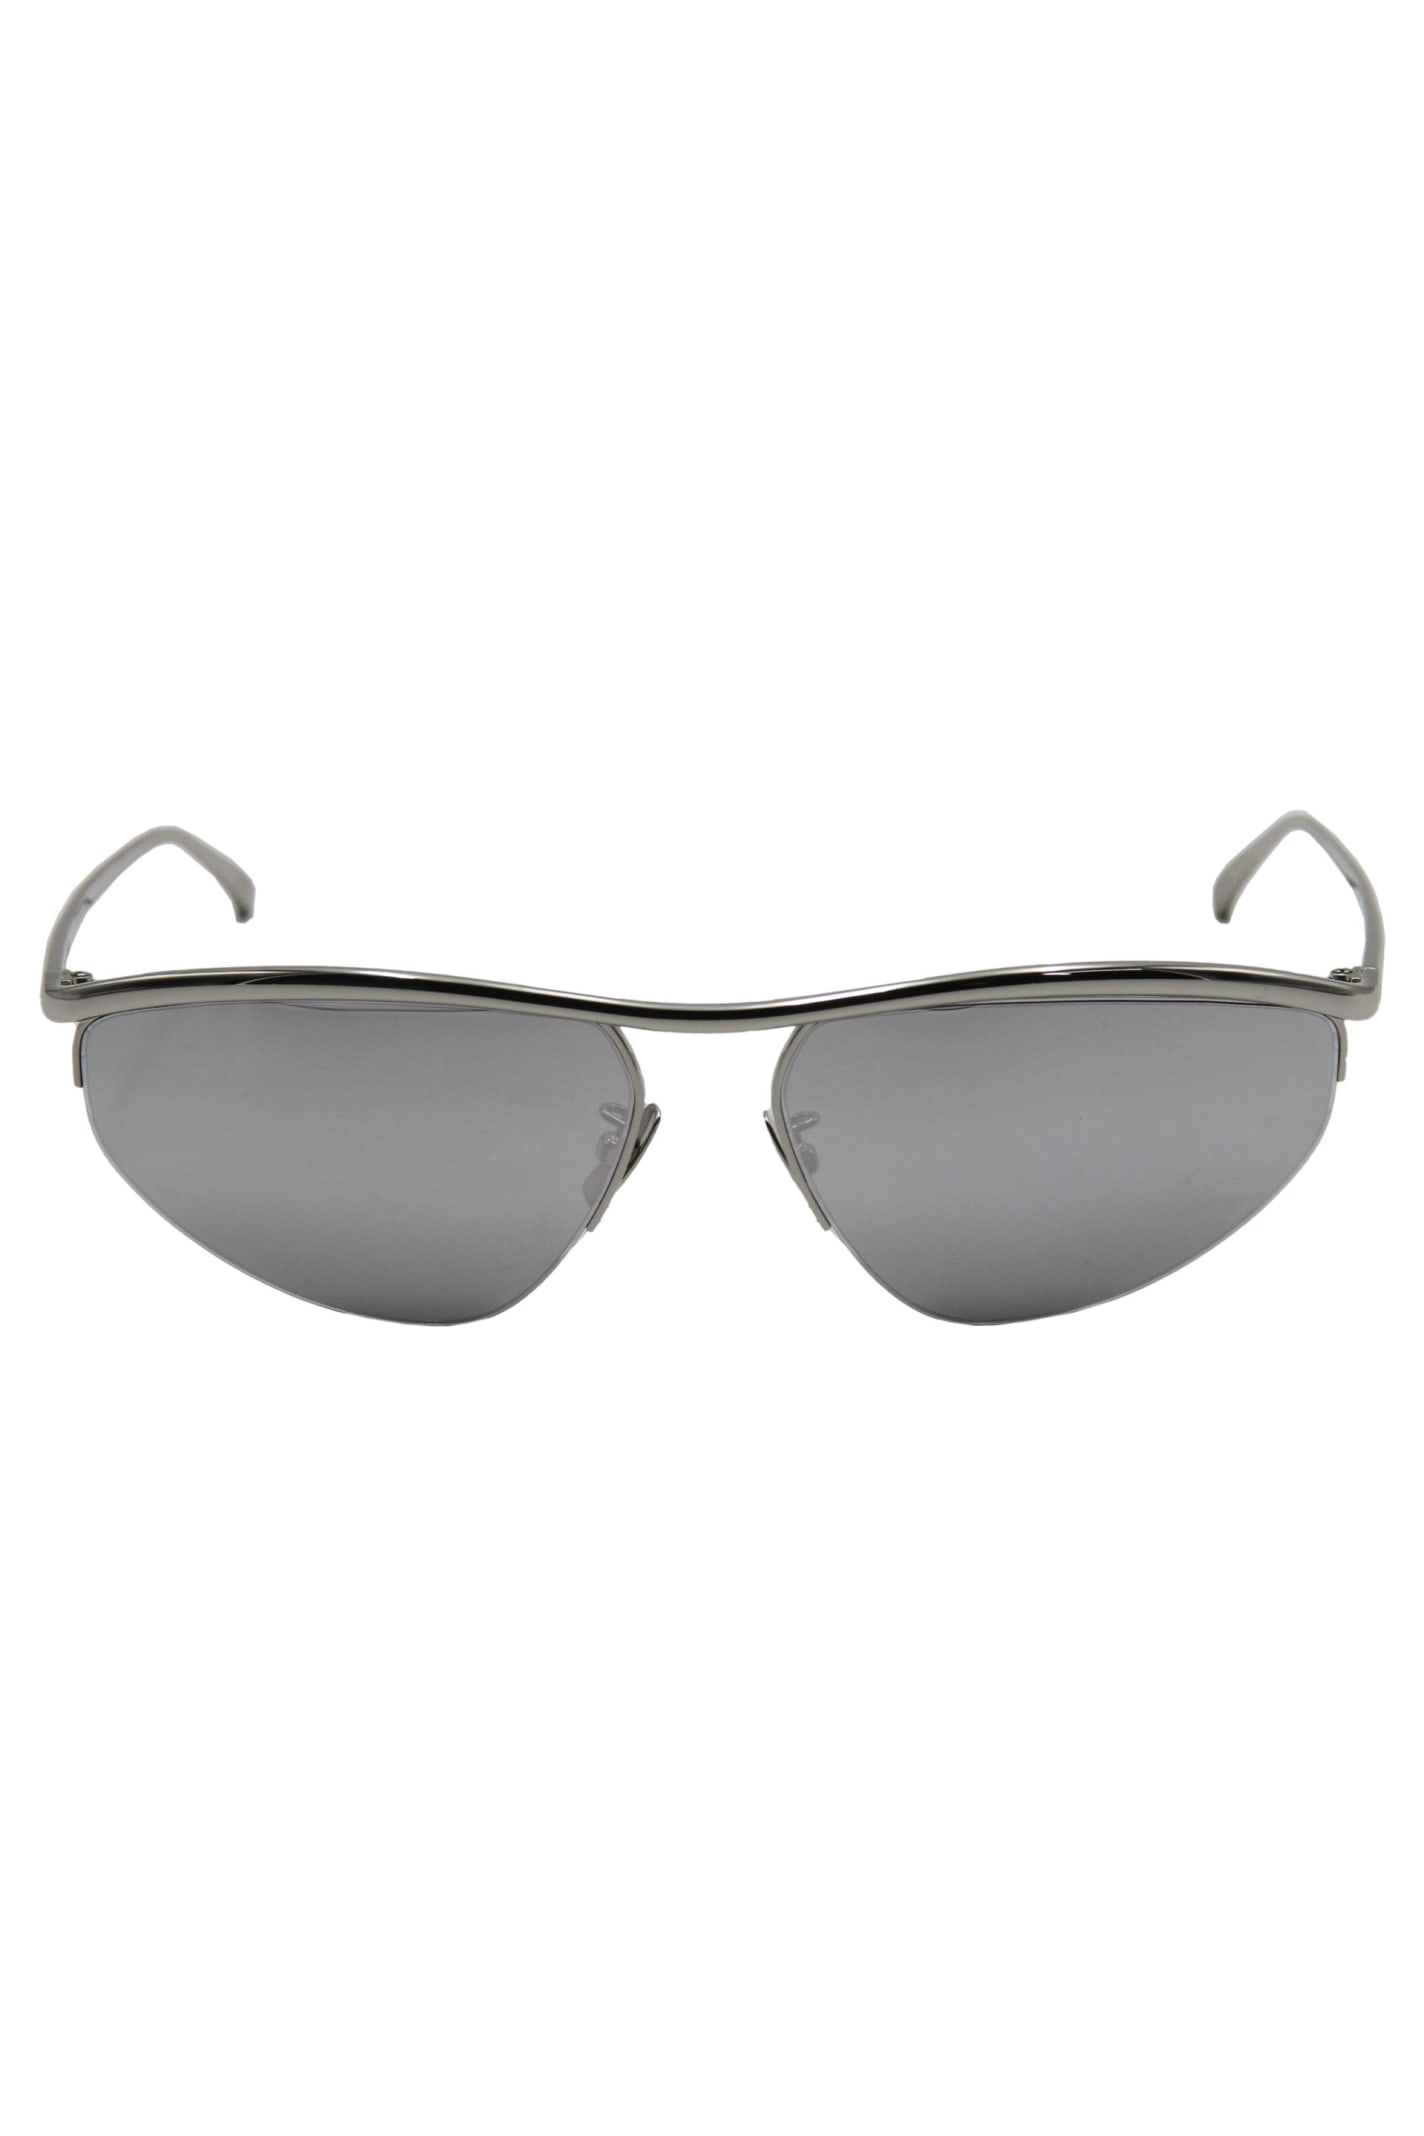 Shop Bottega Veneta Half Frame Sunglasses In Silver